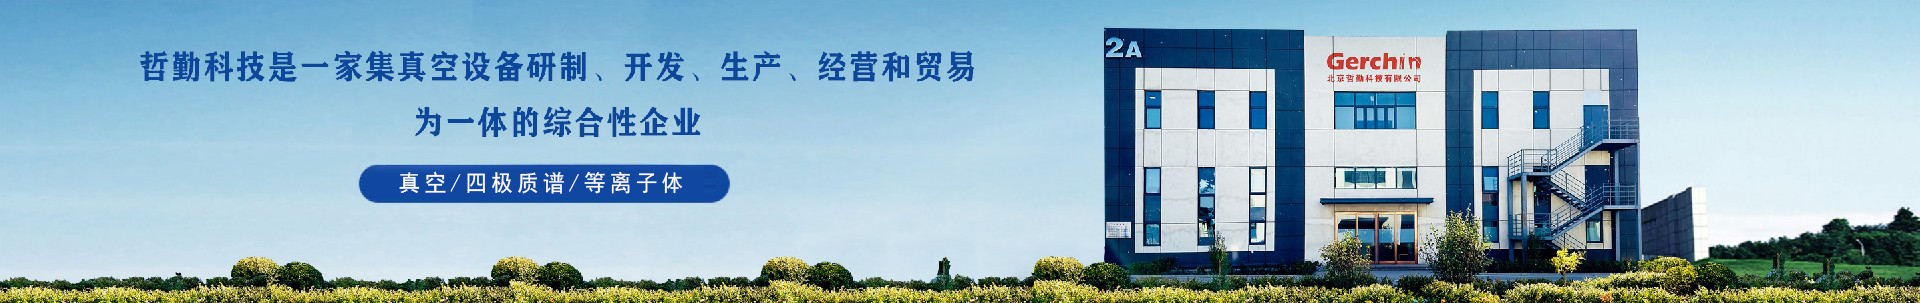 【延期通知】关于“第24届中国国际光电博览会(CIOE)”延期举办的通知-行业新闻-龙8唯一官网科技有限公司